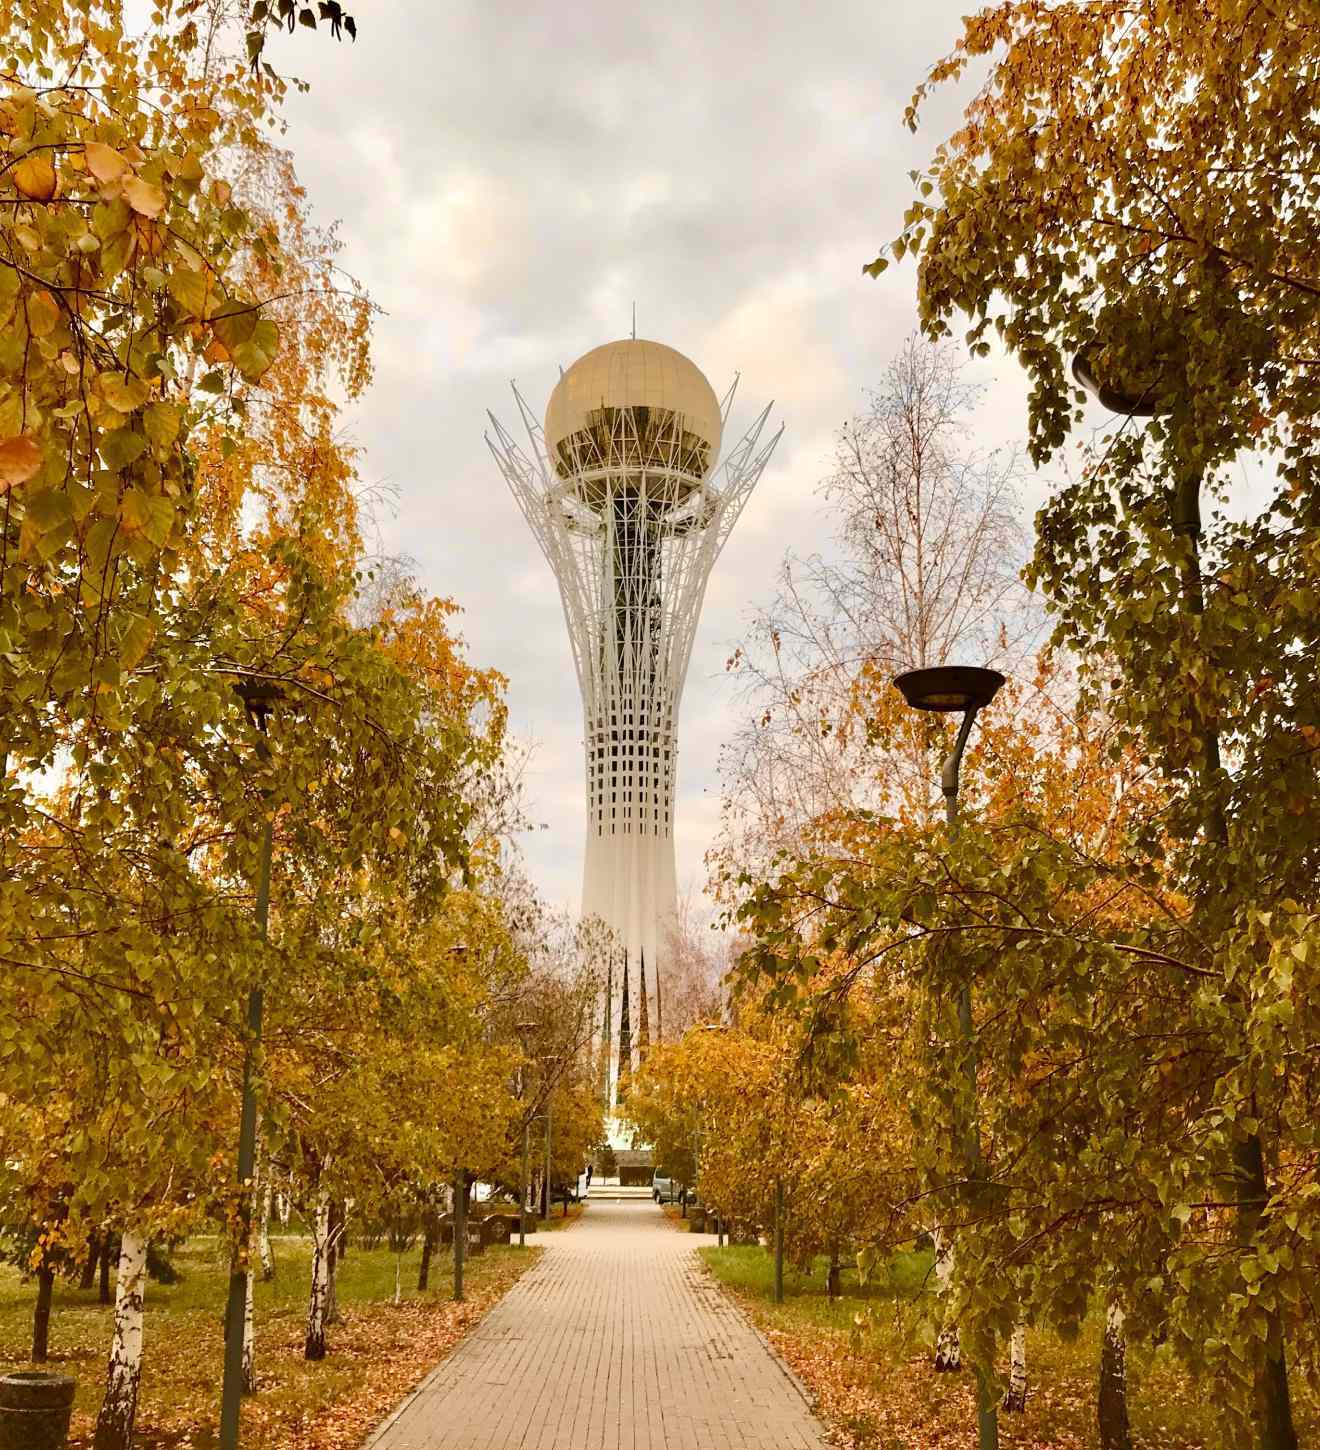 City in Kazakhstan